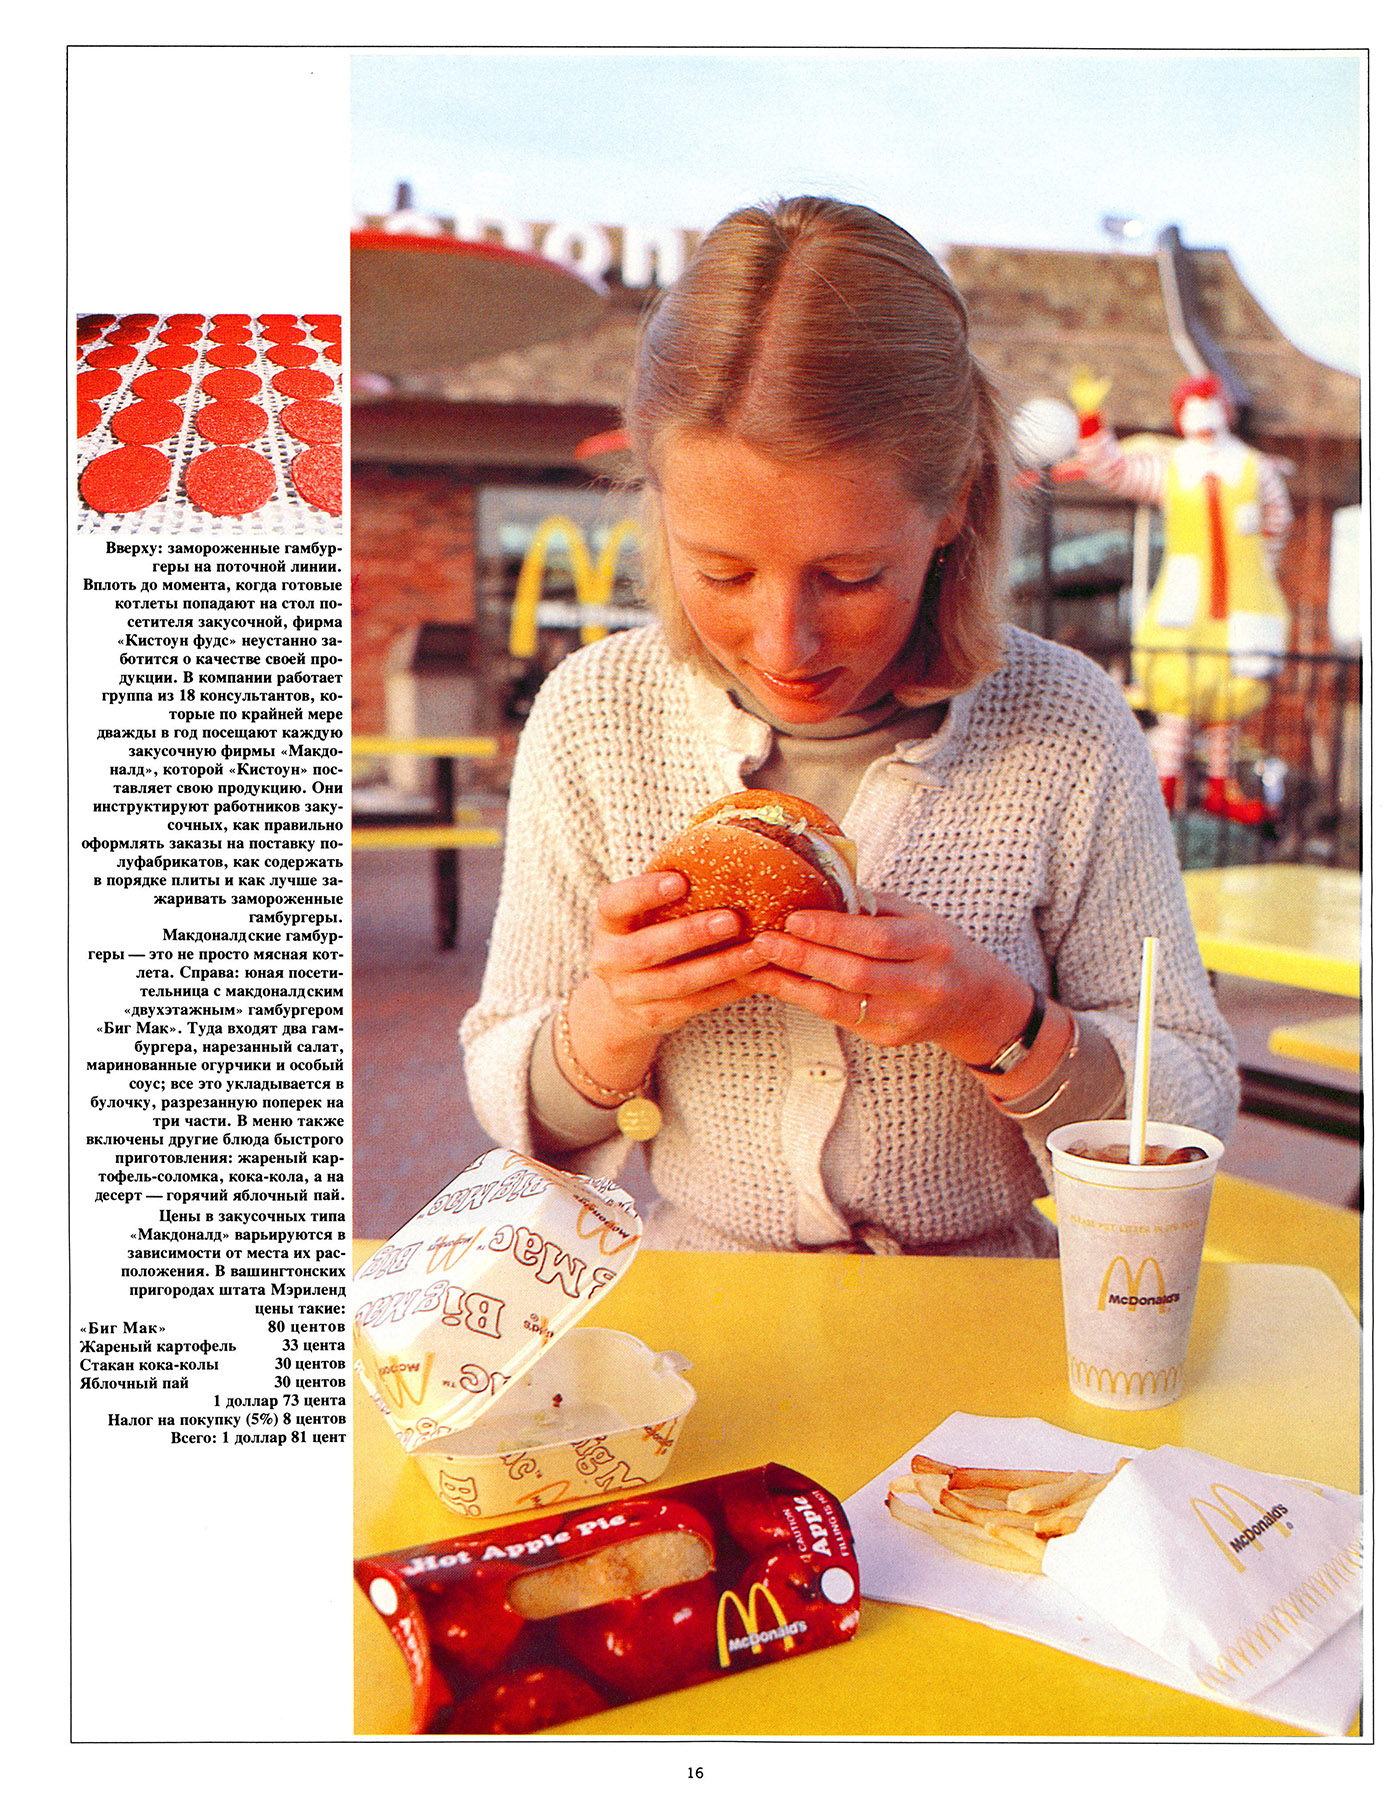 «Макдоналдские гамбургеры — это не просто мясная котлета». Америка №1, 1979.jpg